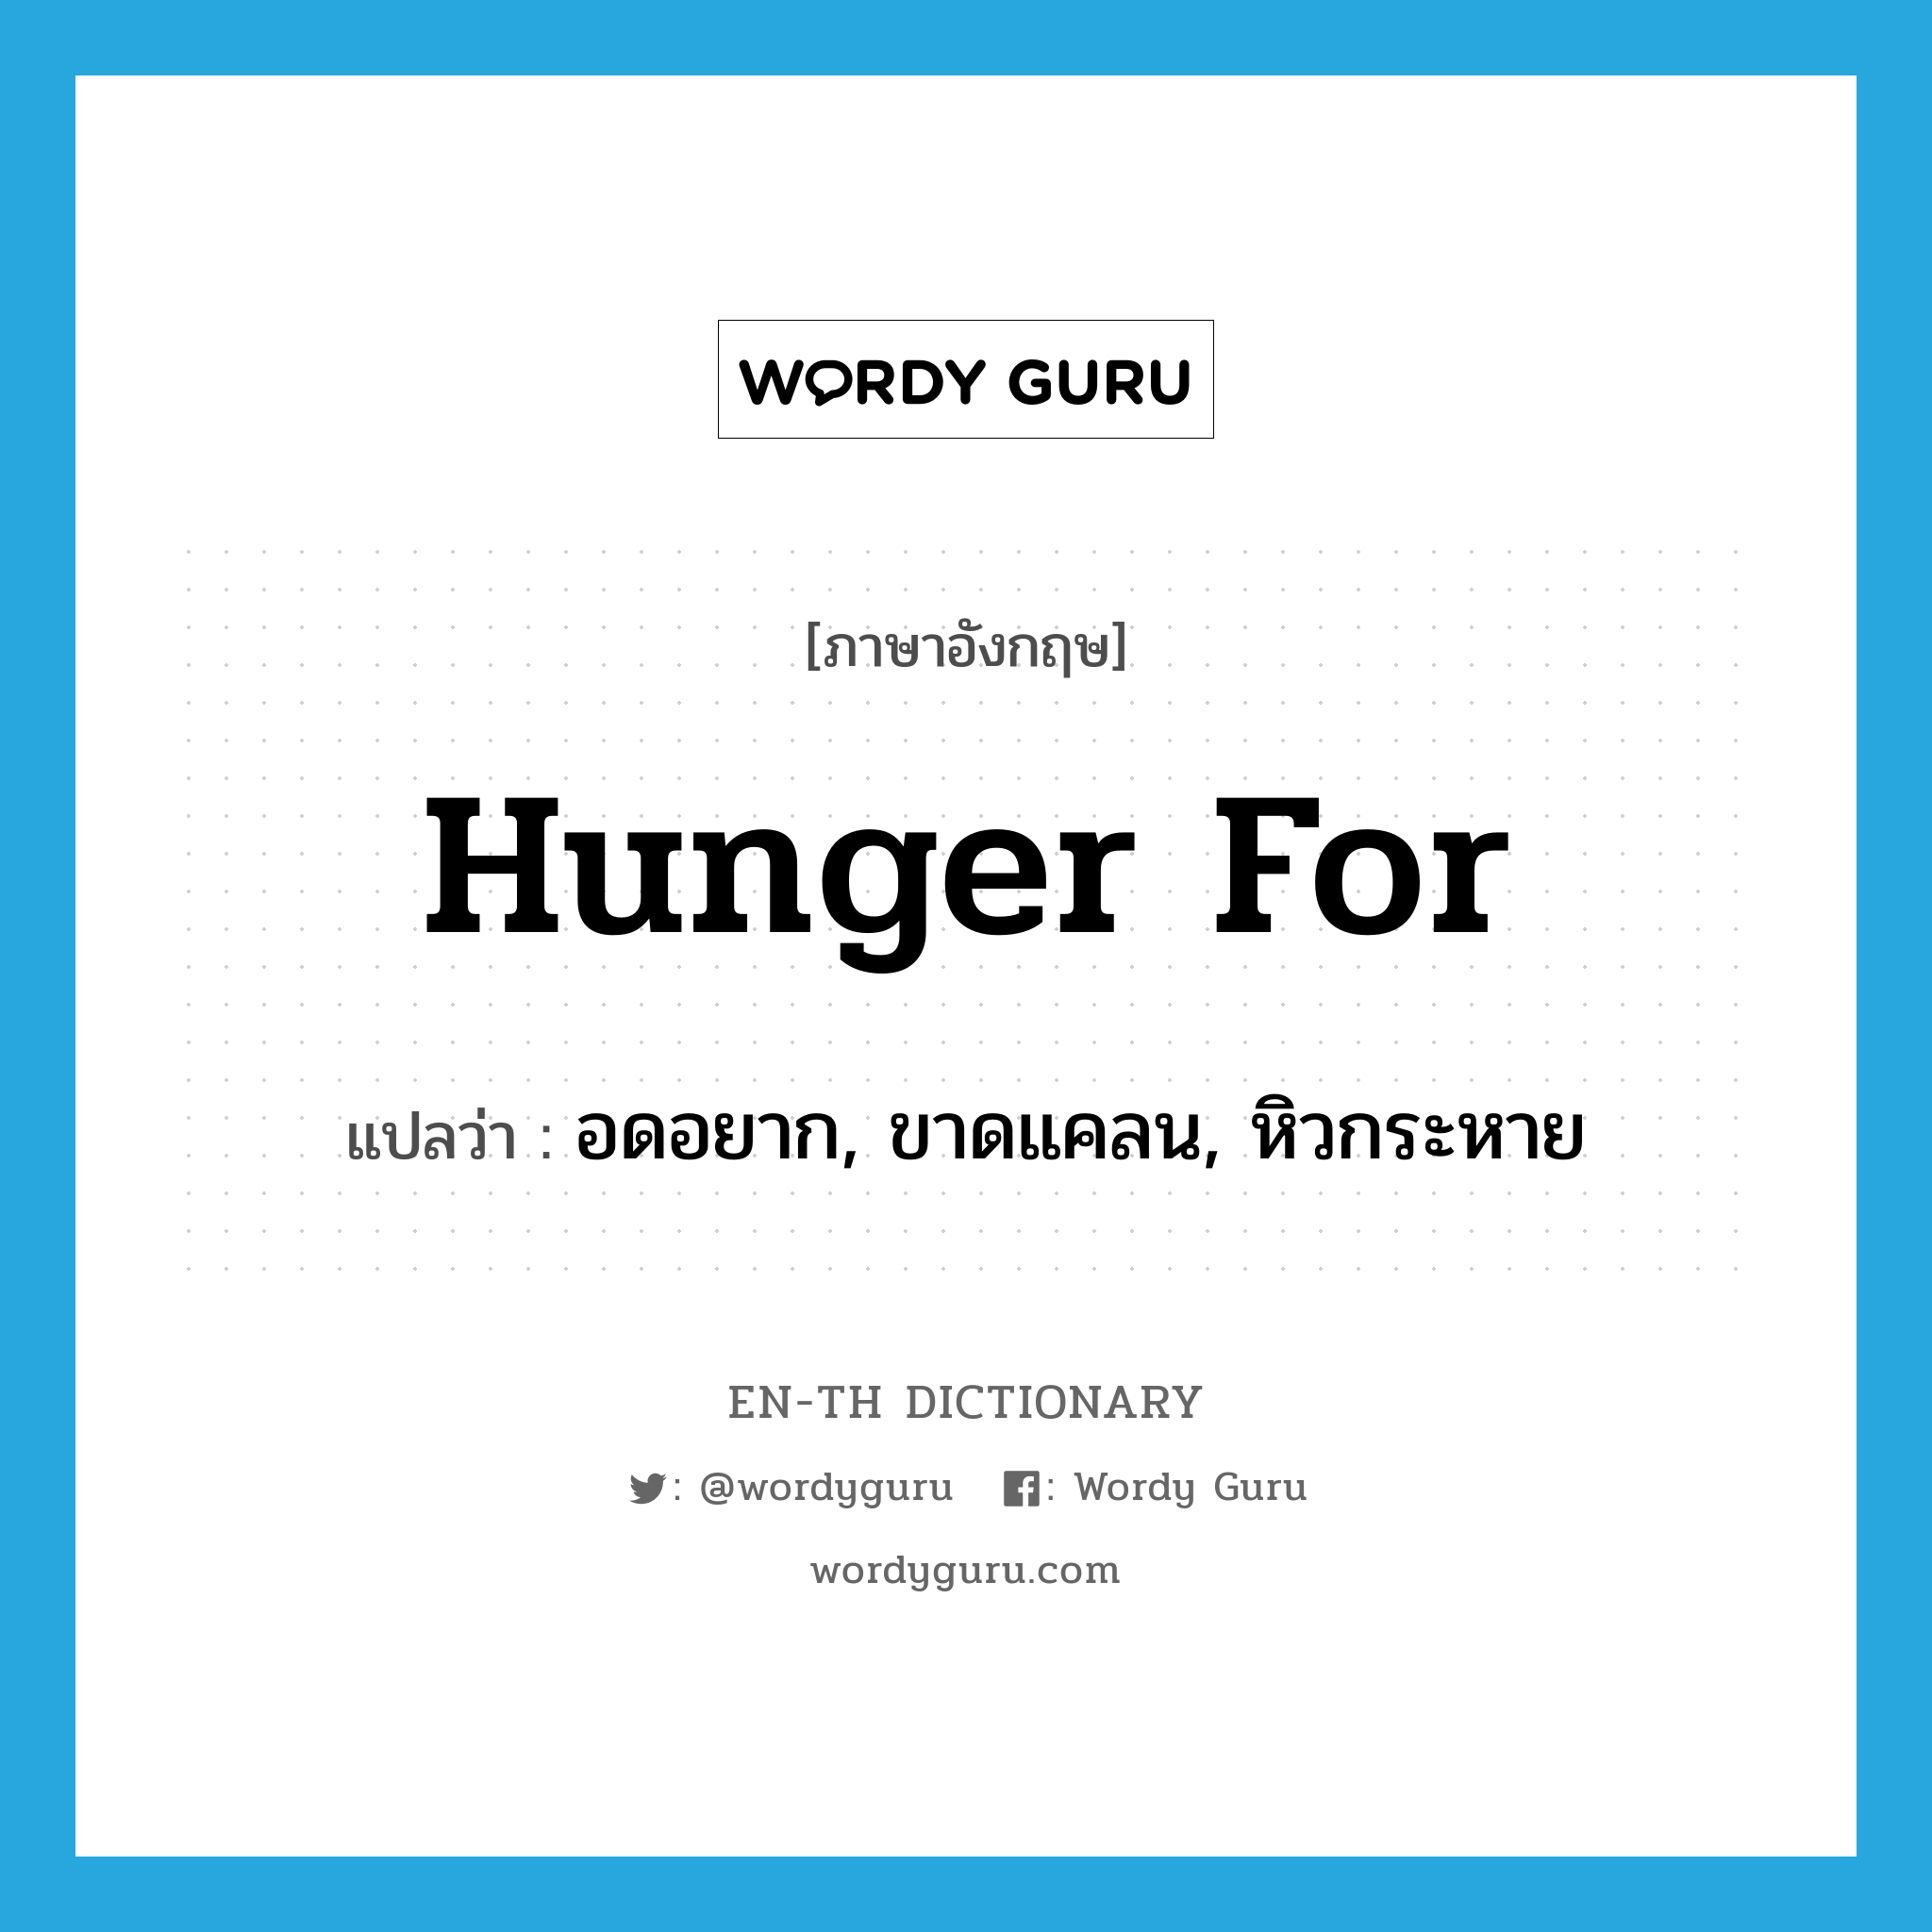 hunger for แปลว่า?, คำศัพท์ภาษาอังกฤษ hunger for แปลว่า อดอยาก, ขาดแคลน, หิวกระหาย ประเภท PHRV หมวด PHRV